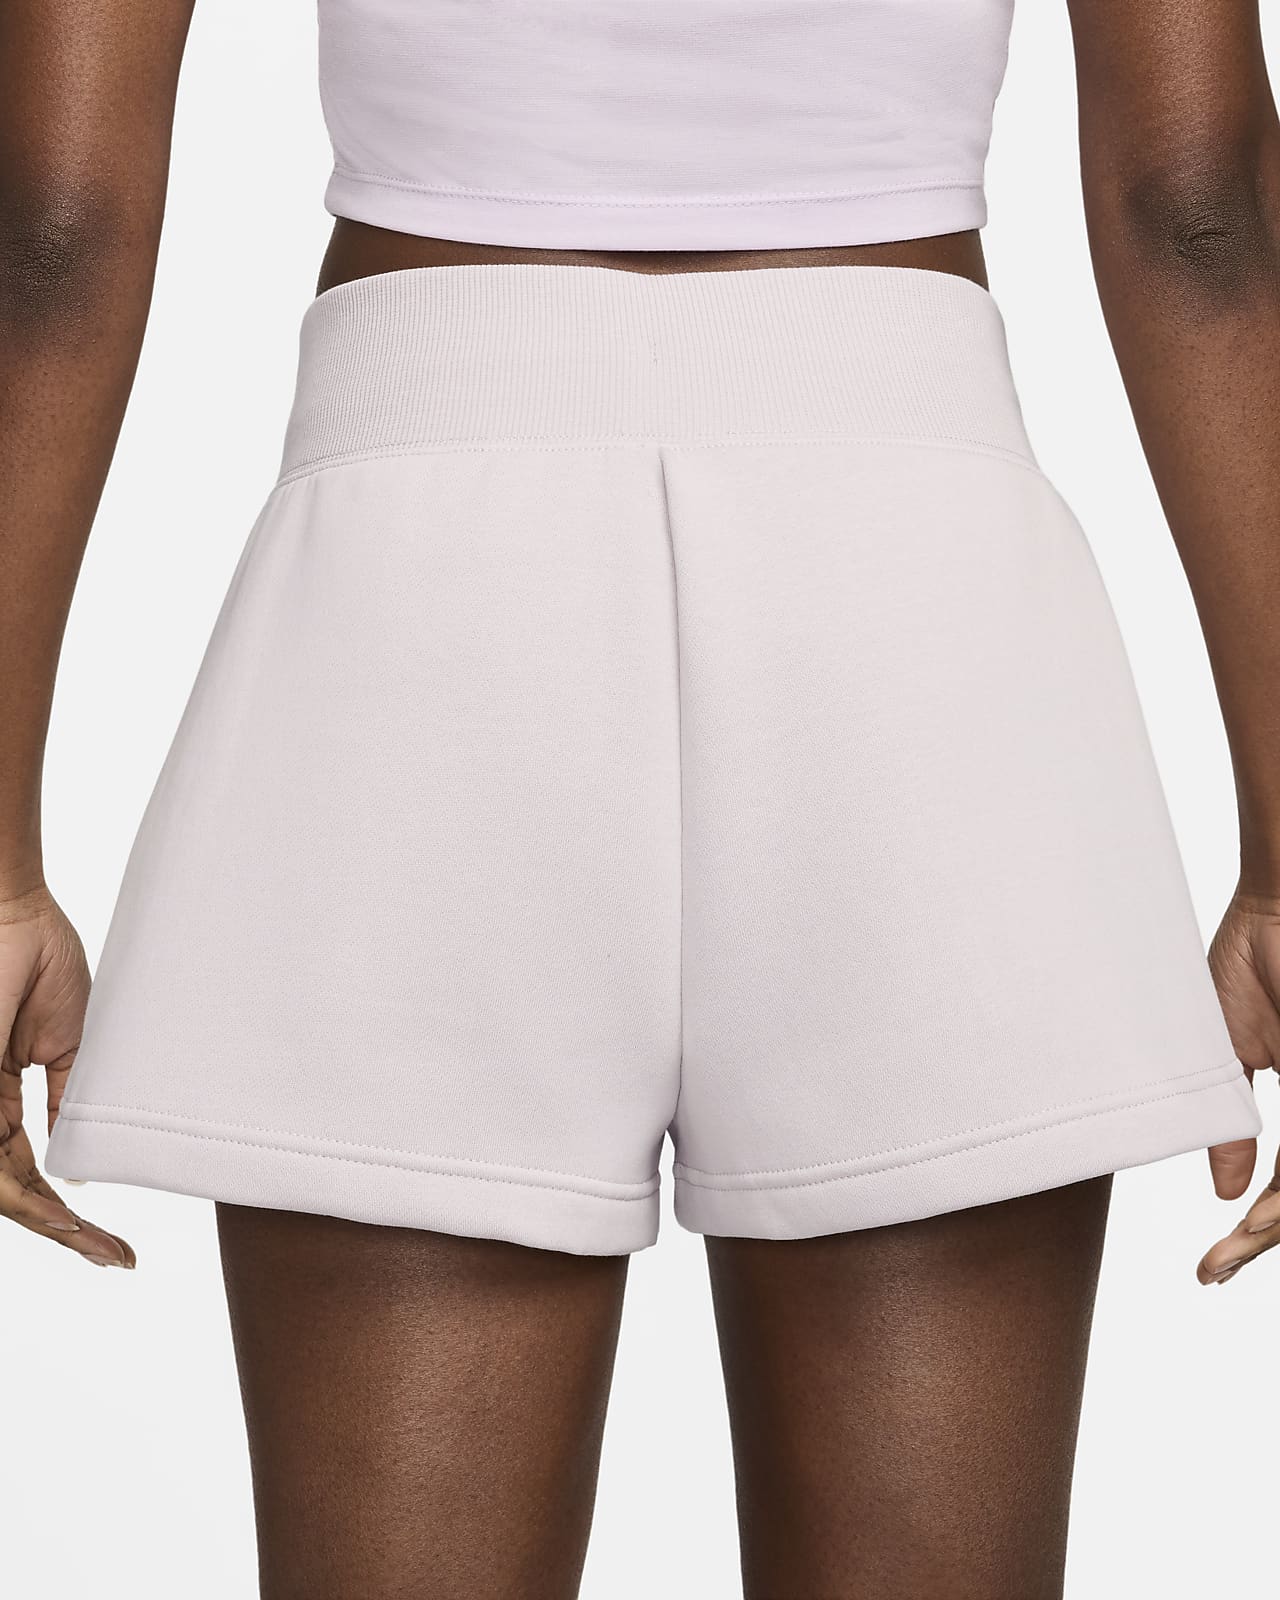 Nike Sportswear Phoenix Fleece Women's High-Waisted Loose Shorts